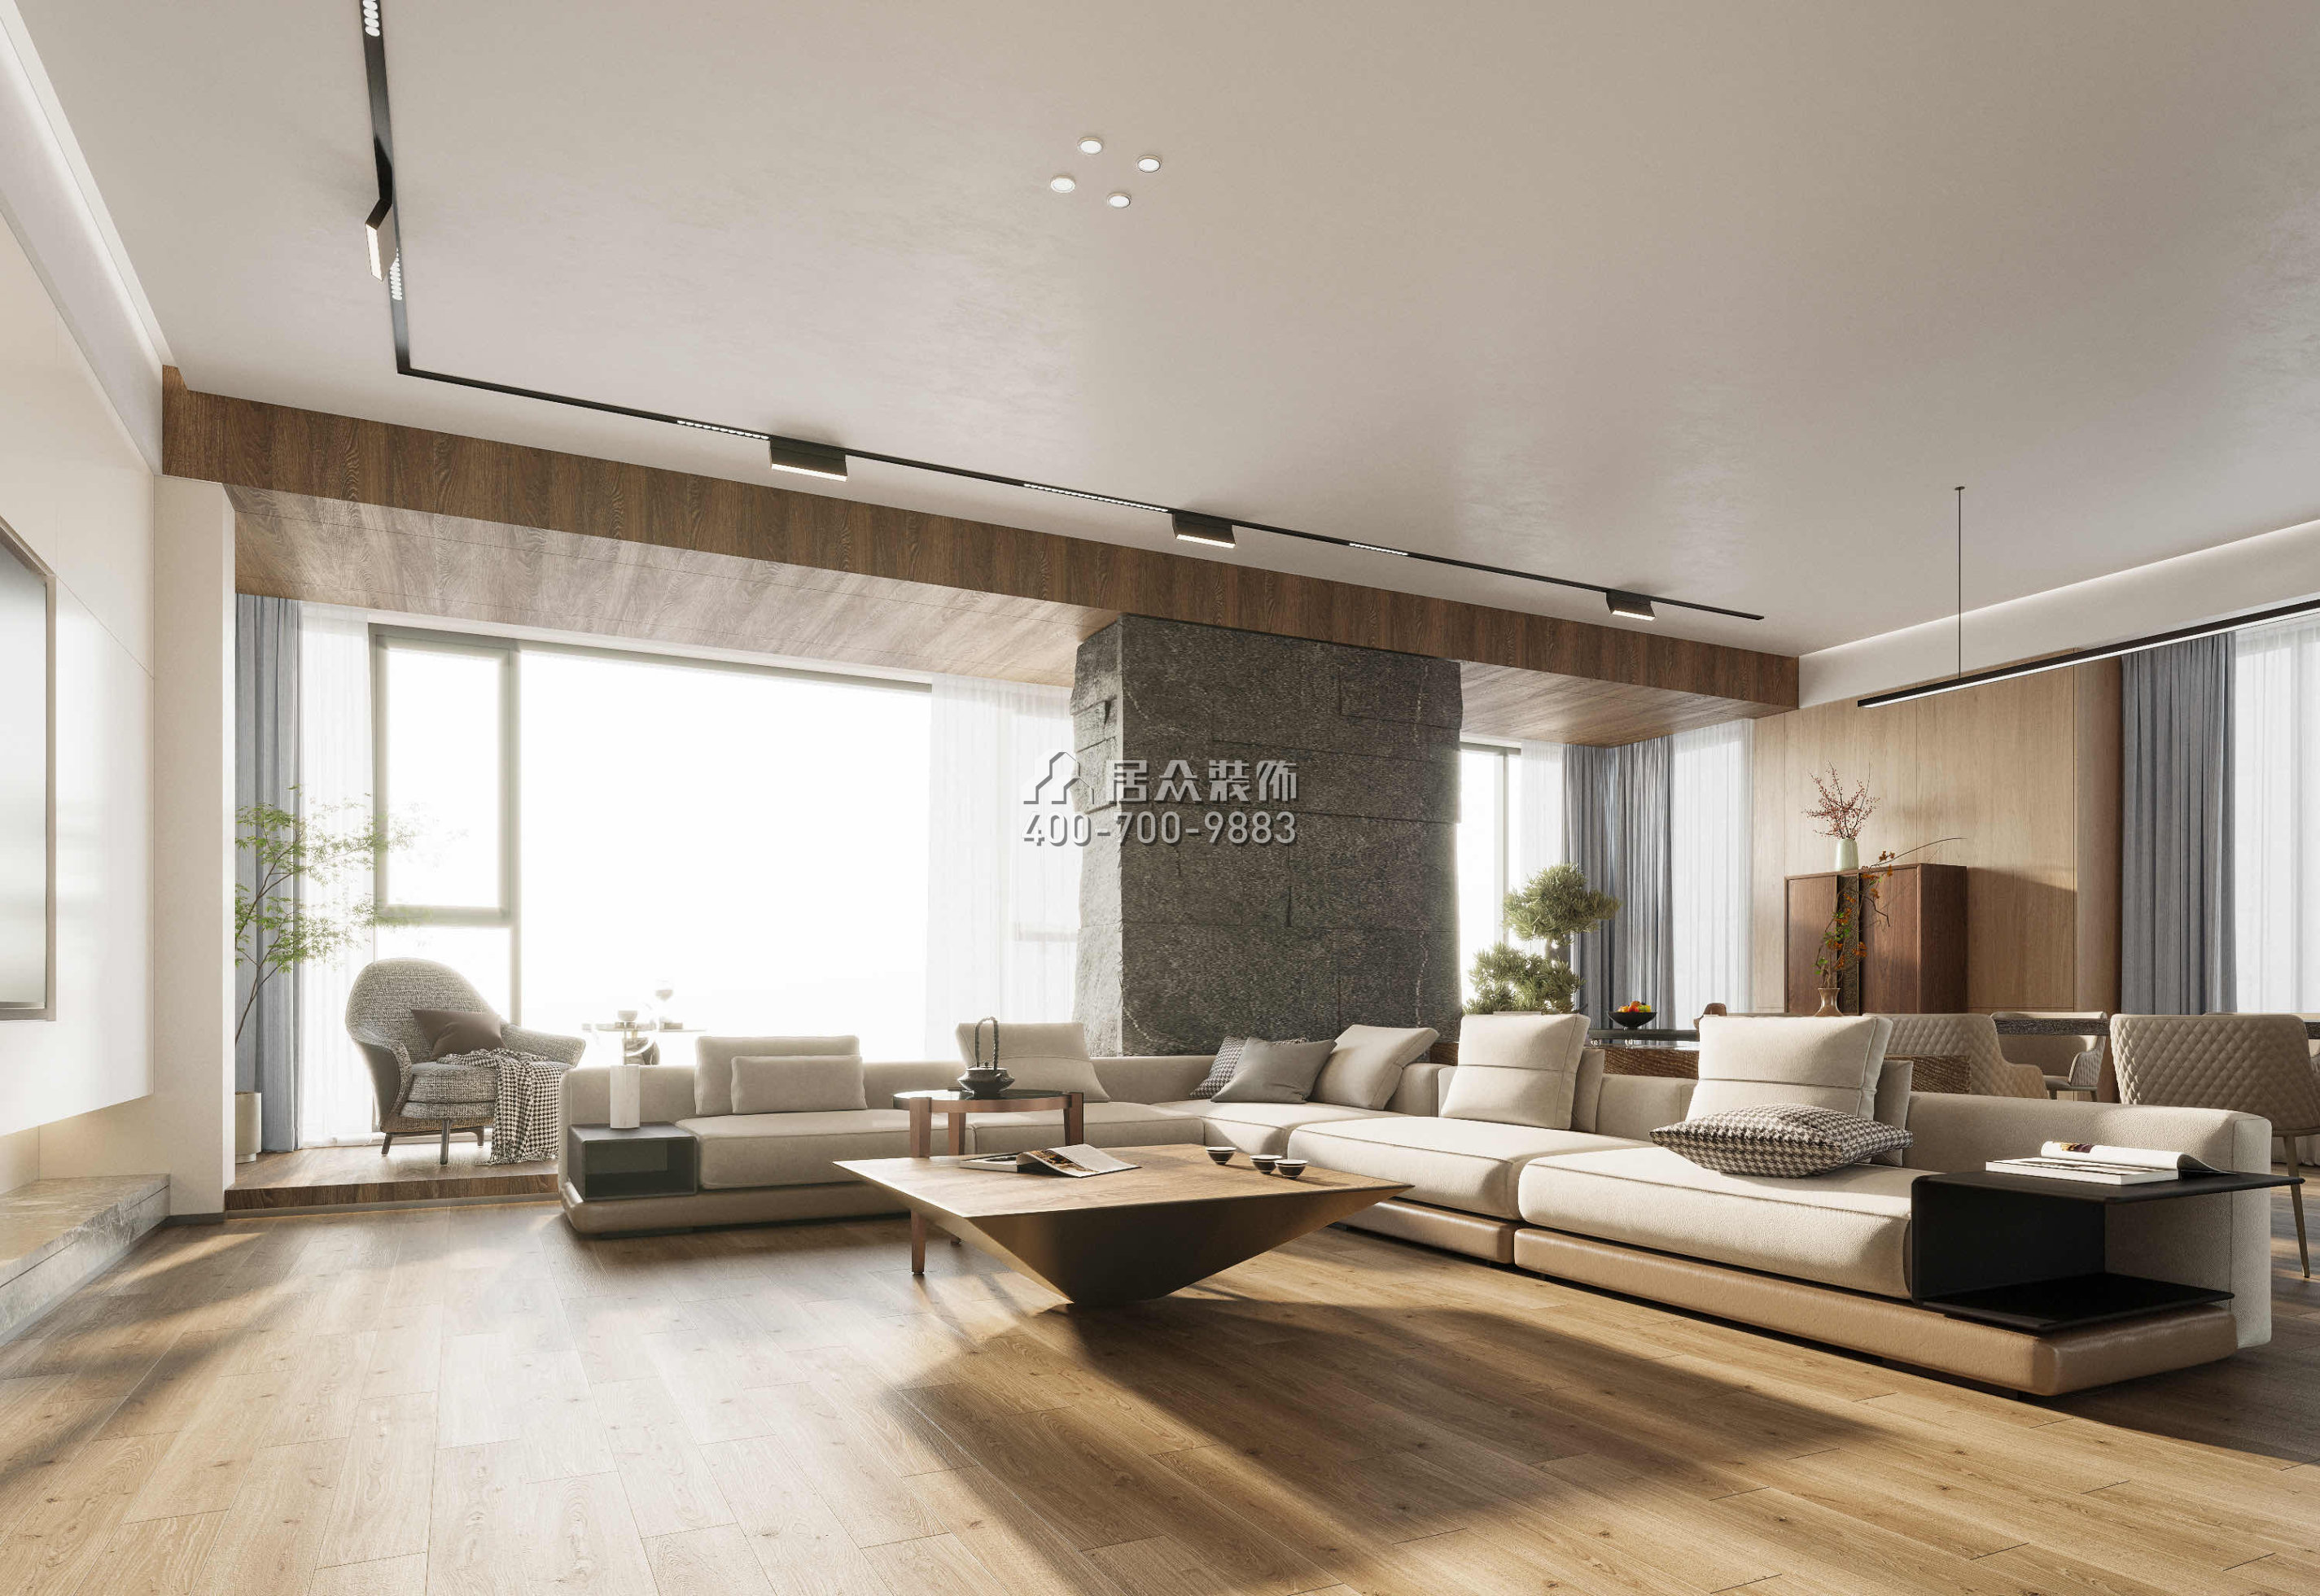 藏珑湖上国际412平方米现代简约风格平层户型客厅装修效果图